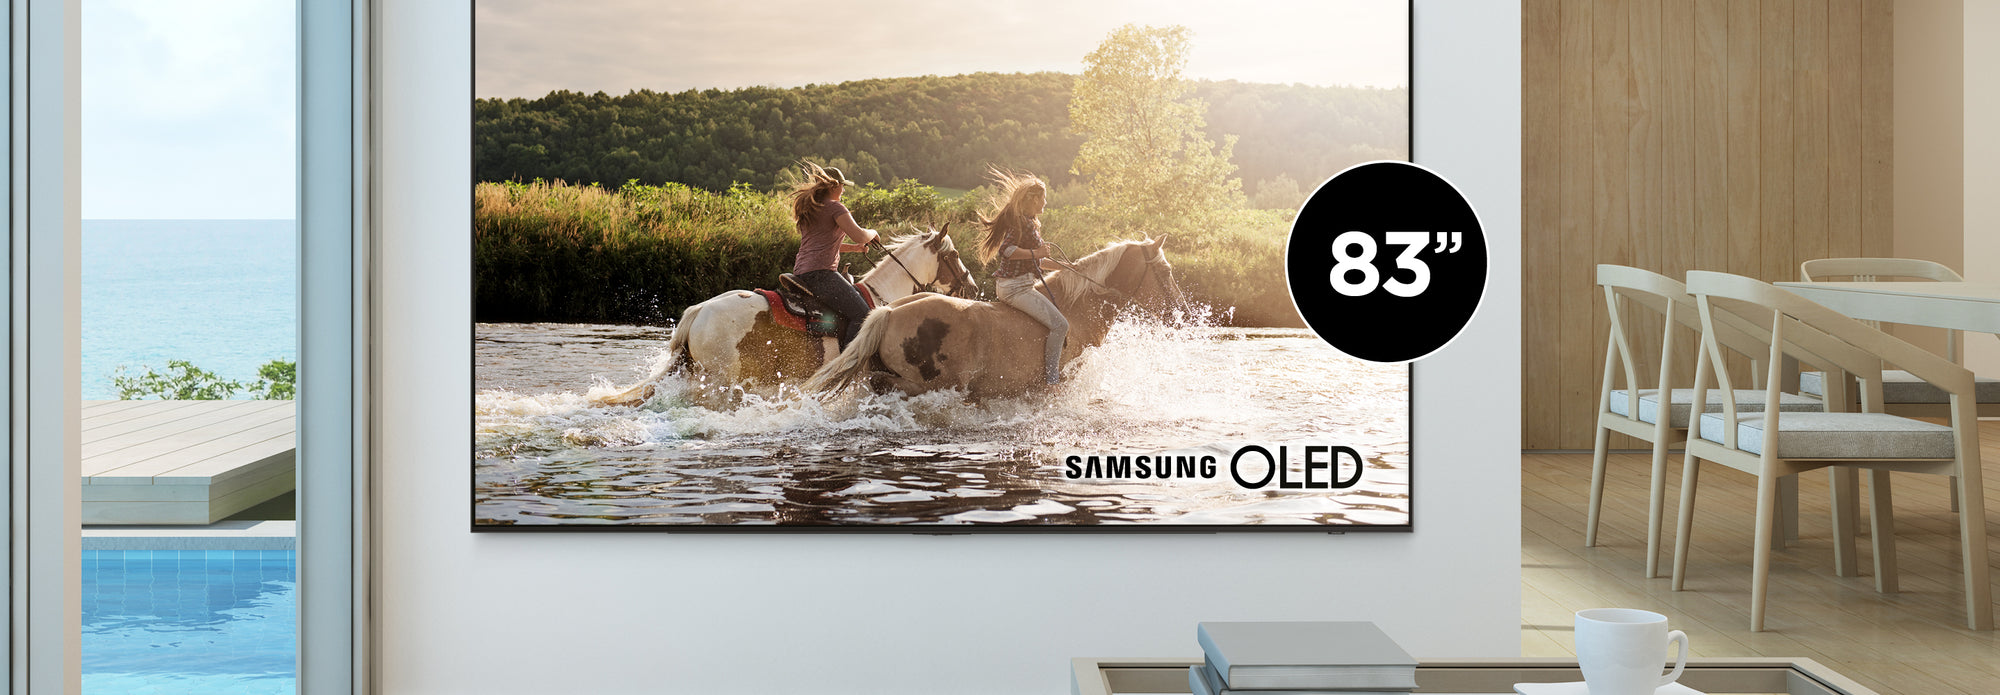 Nouveauté Samsung 83" OLED | SONXPLUS Joliette